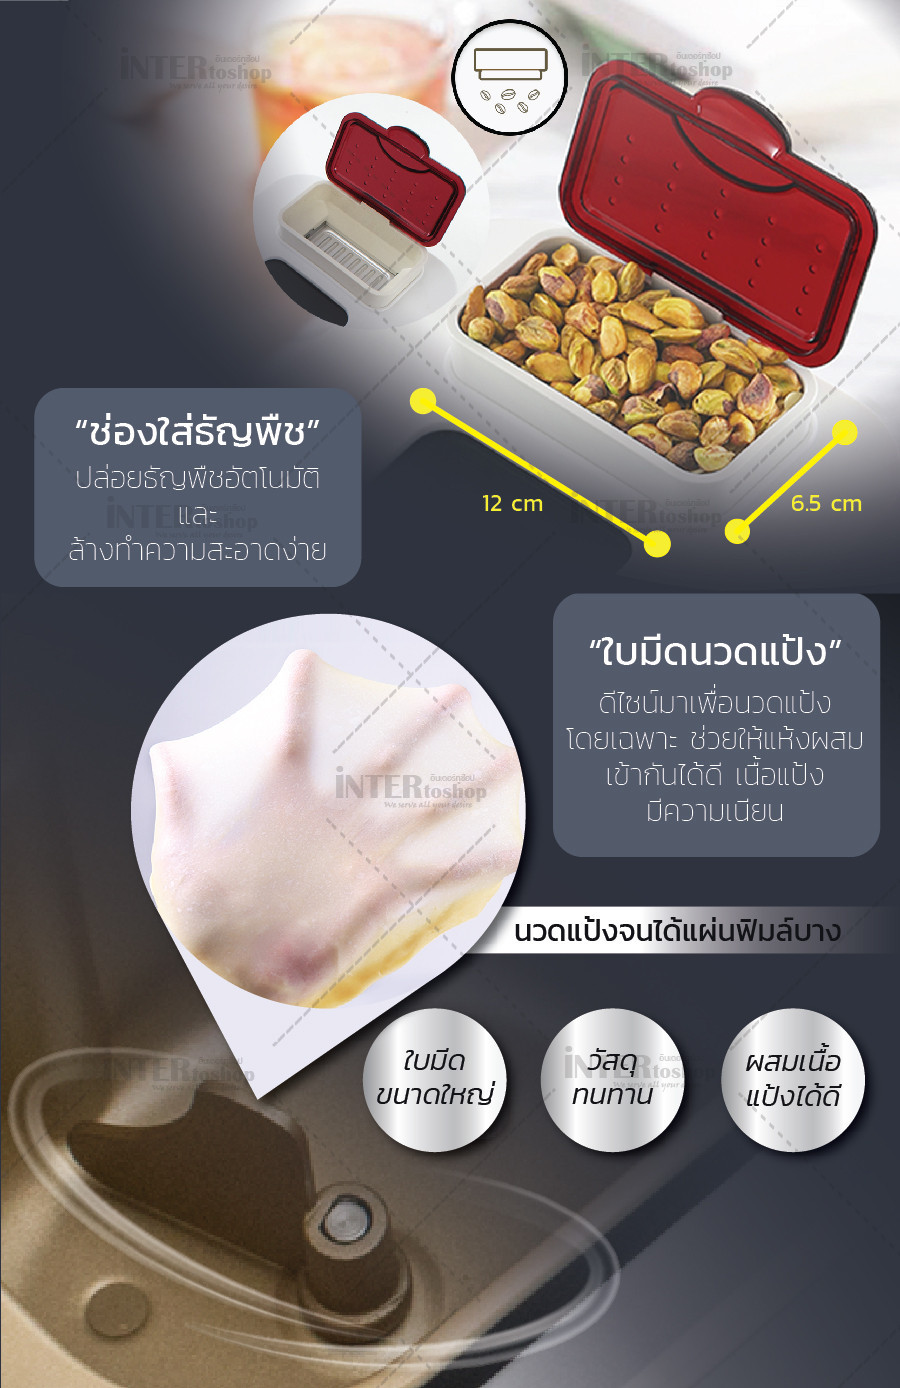 ครื่องทำขนมปังอเนกประสงค์ พร้อมอุปกรณ์ทำไอศกรีม  ยี่ห้อ HomeBake รุ่น PE6280